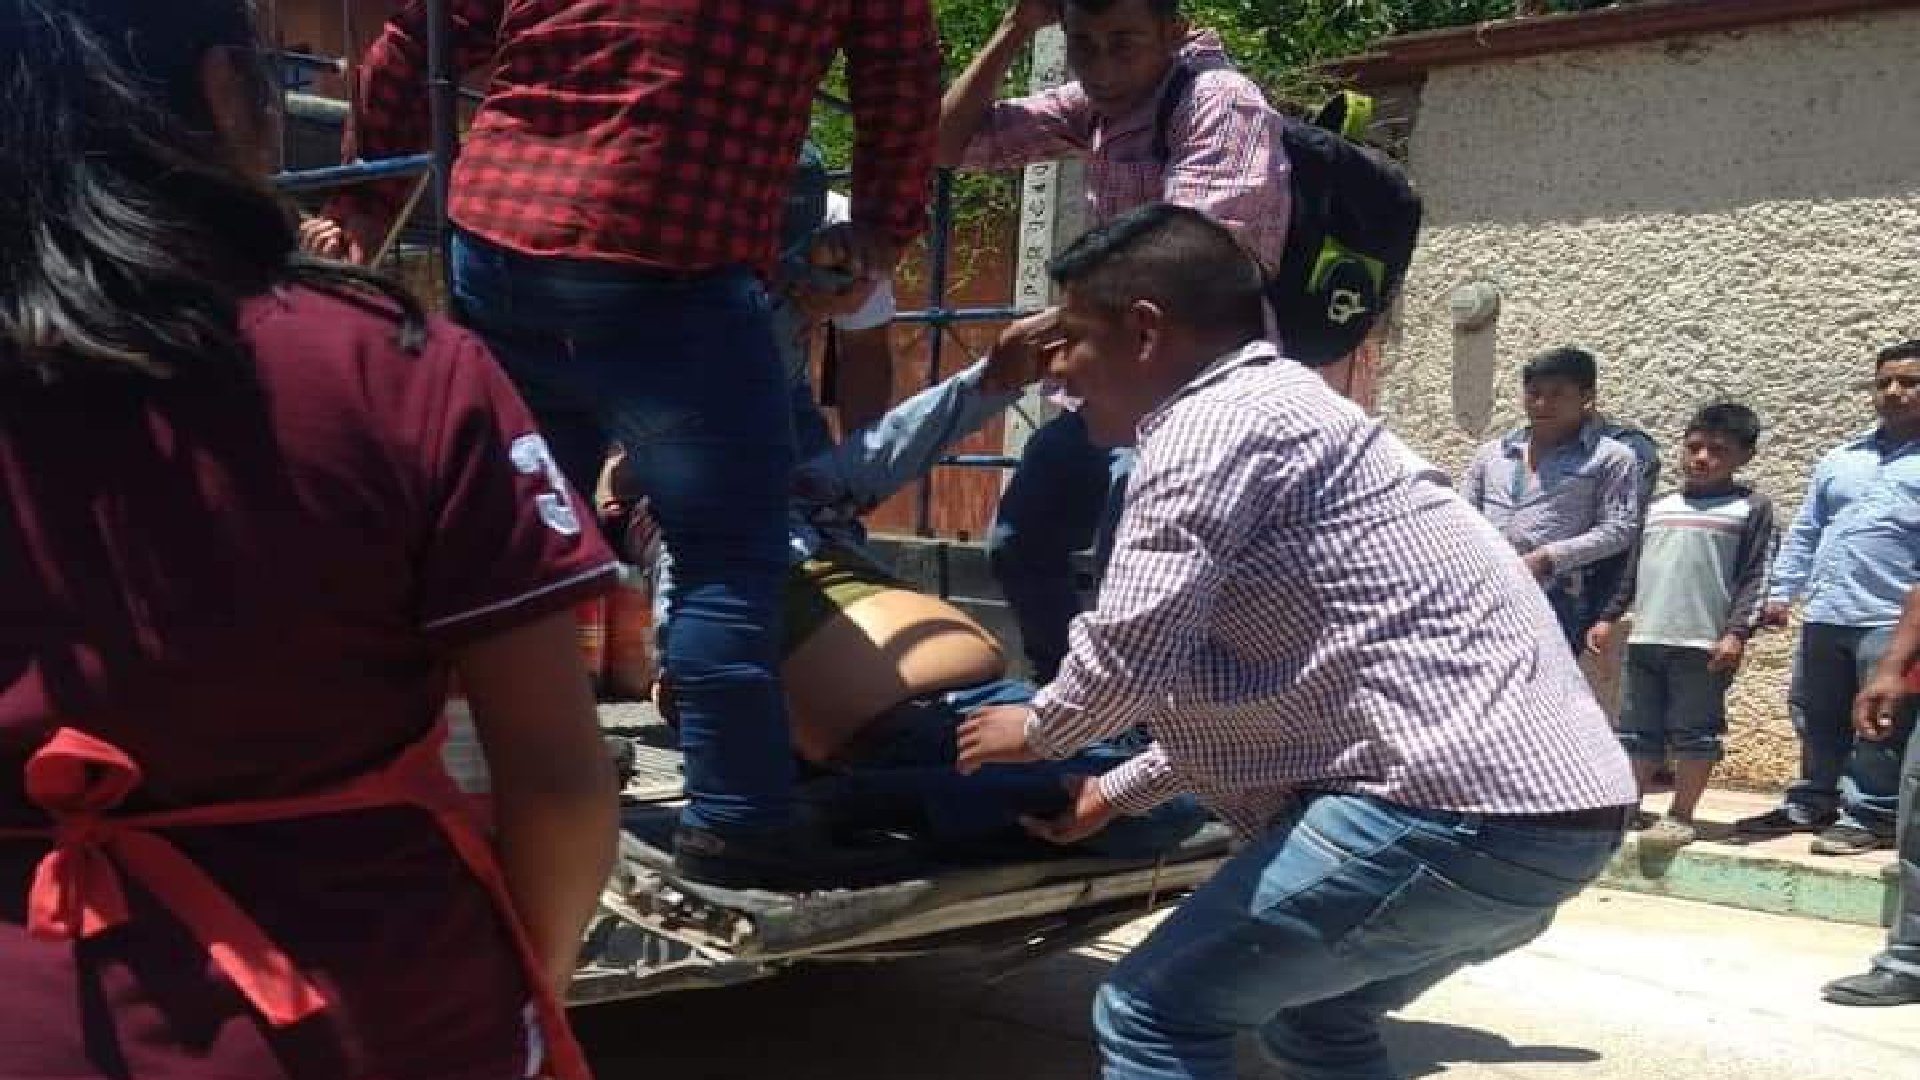 Pobladores ayudaron a trasladar a la victima al hospital (Foto: Twitter/DDHH_Chiapas)